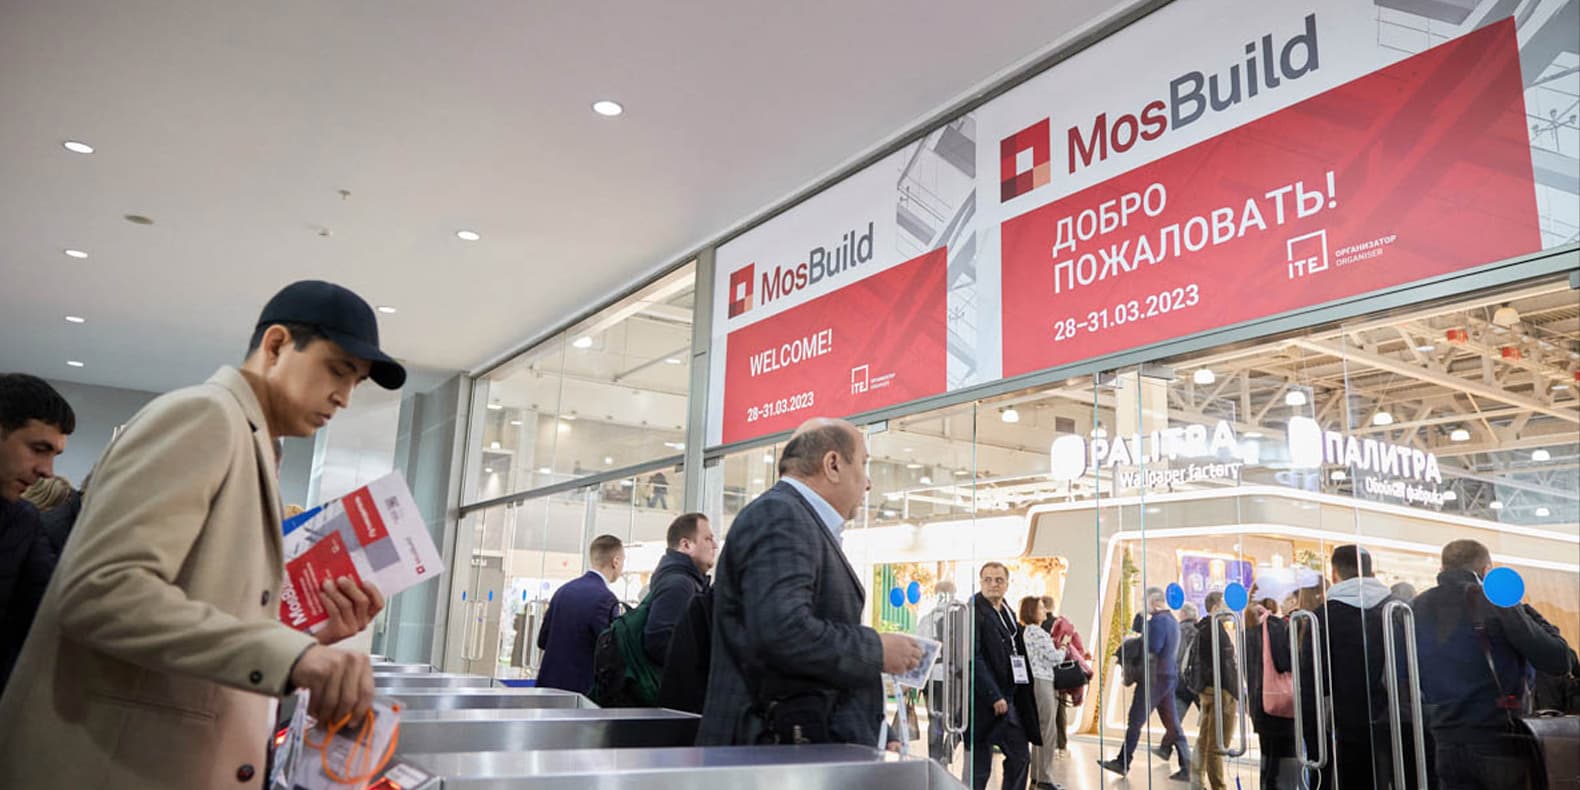 Выставка MOSBUILD. Мосбилд строительная выставка 2023. Выставка Мосбилд 2024 Москва. Мосбилд 2023 даты.